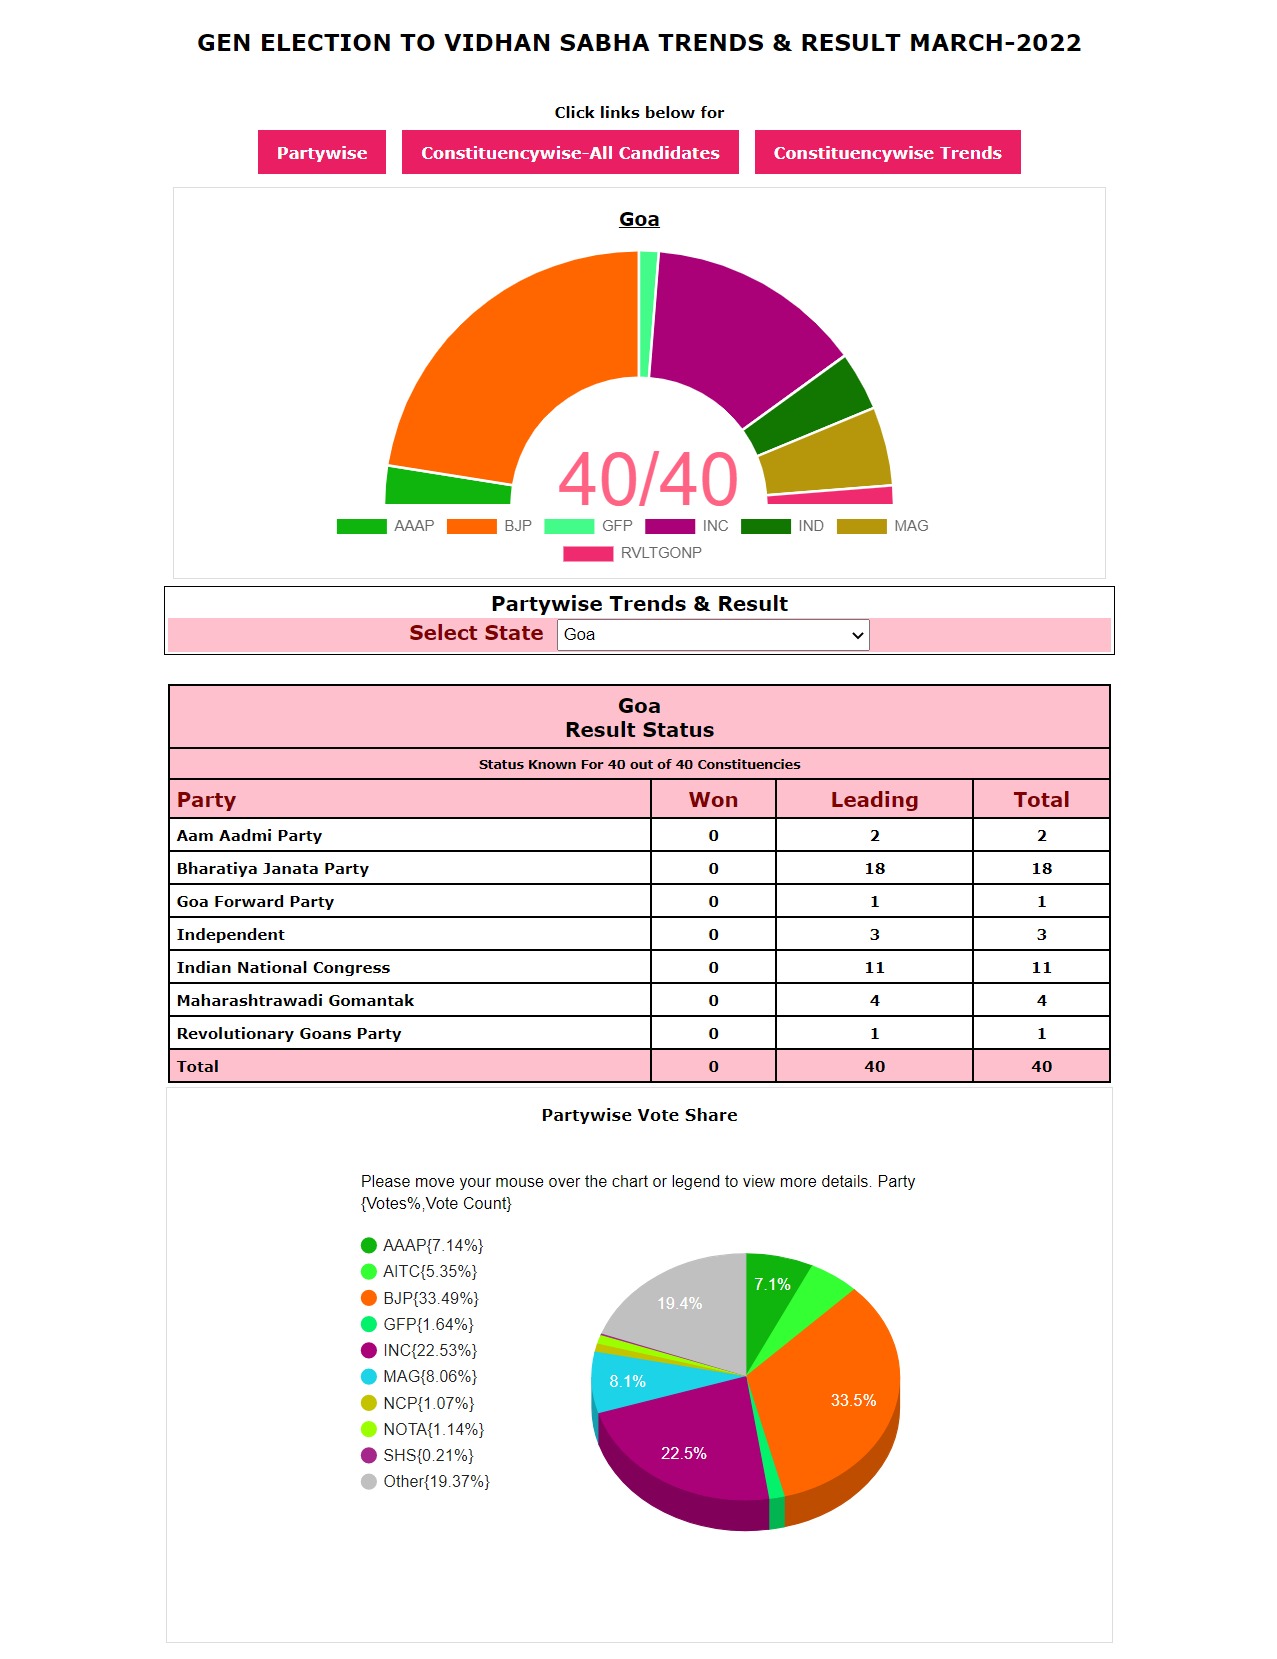 അഞ്ച് സംസ്ഥാനങ്ങളിലെ തിരഞ്ഞെടുപ്പ് ഫലം | Five State Election Result